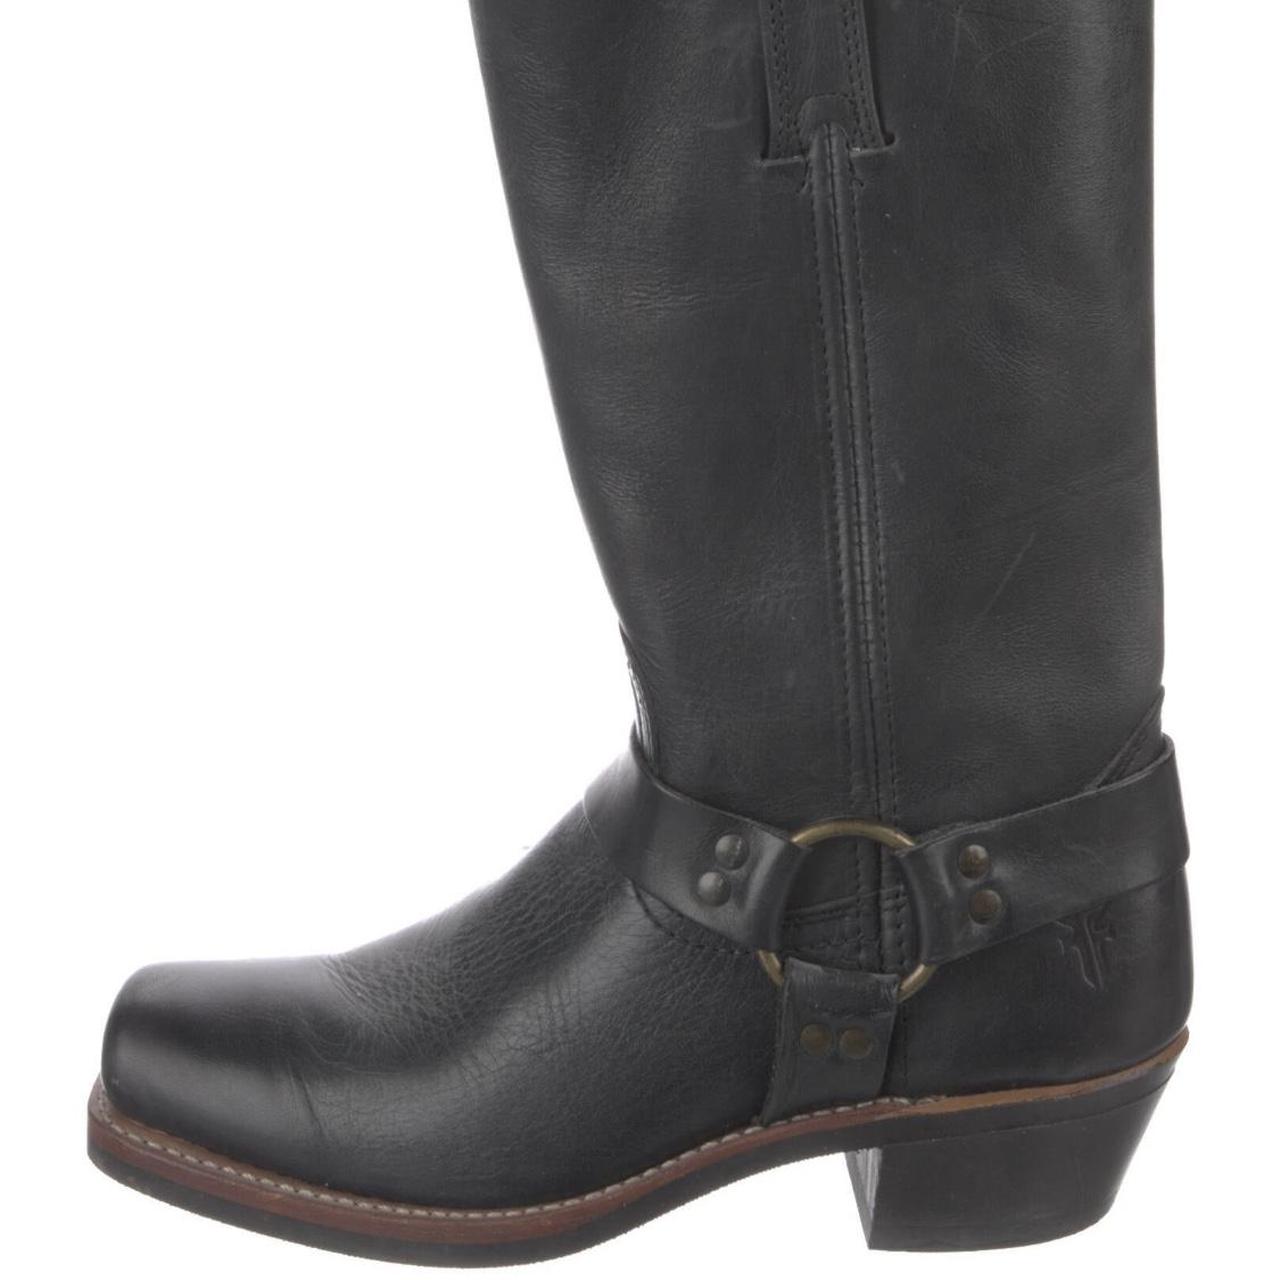 Frye Women's Black Boots (2)